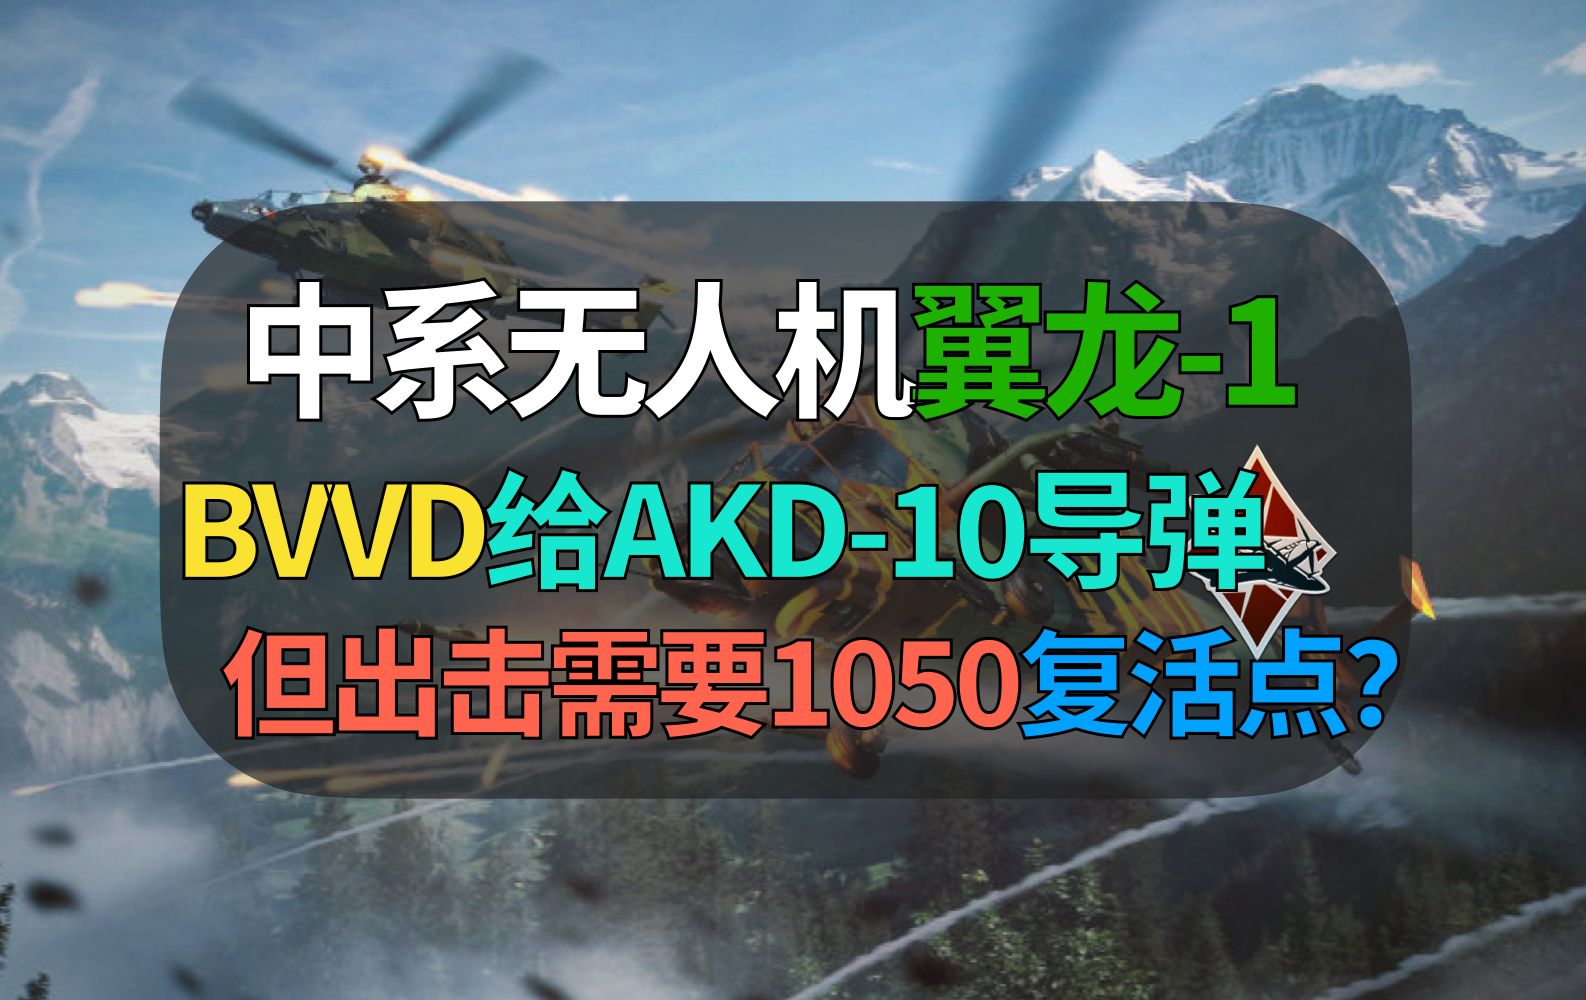 【战争雷霆】BVVD中系翼龙1终于给AKD-10了！但出击要1050复活点绷不住啊……